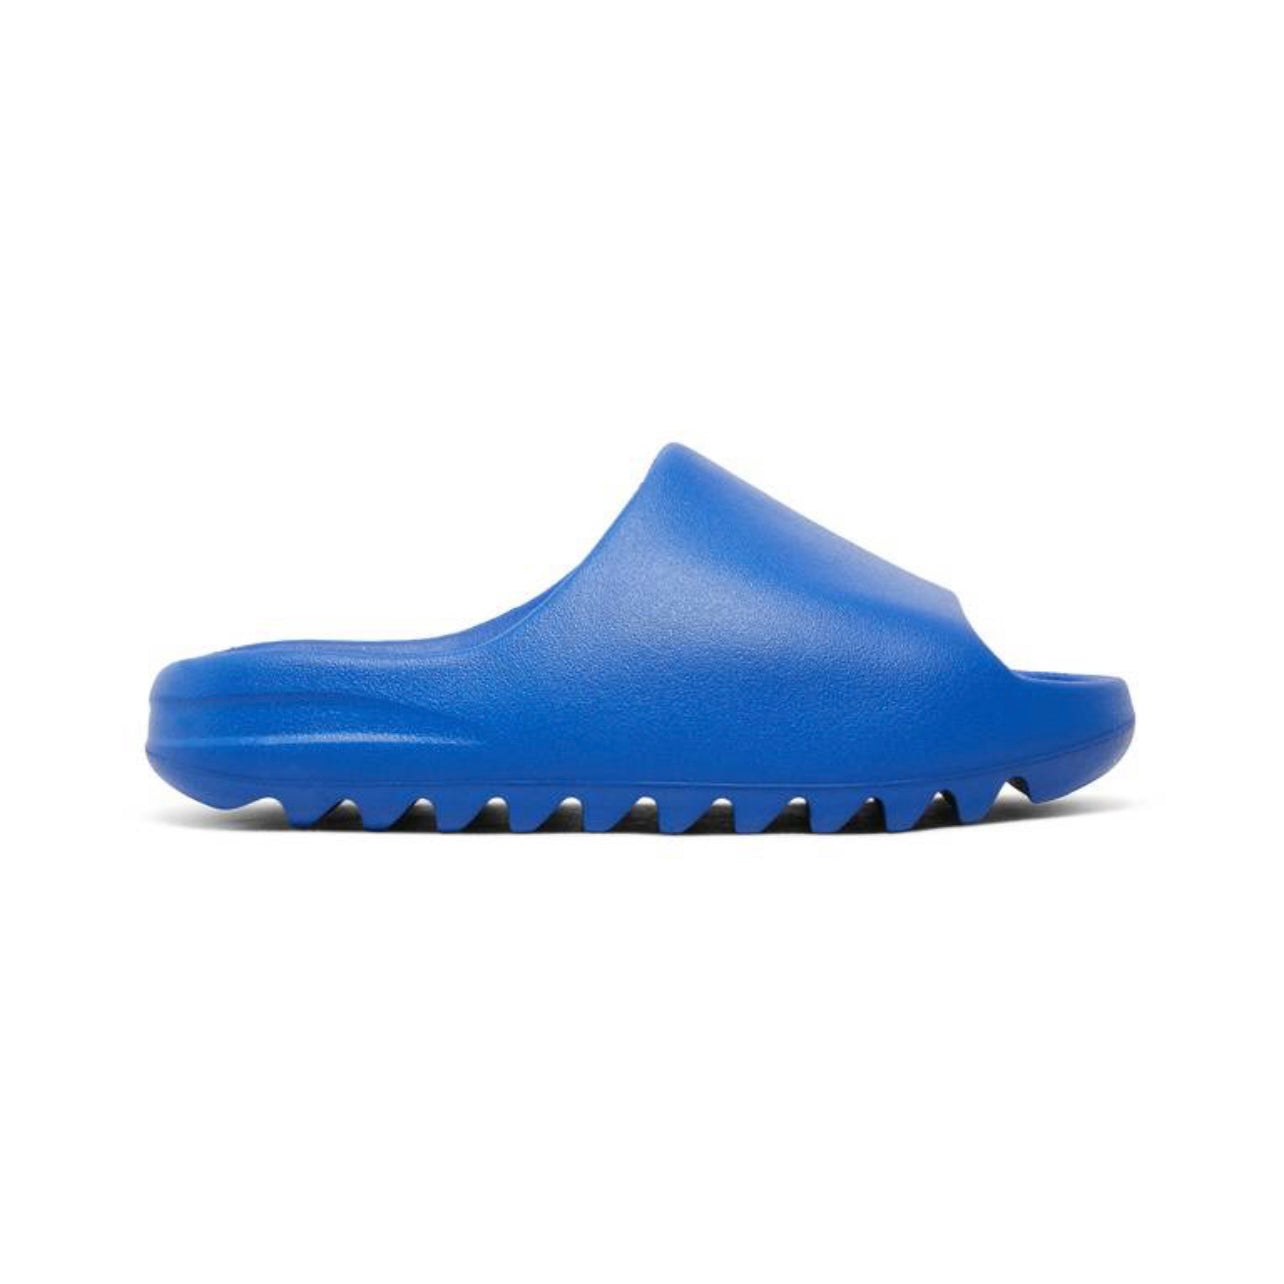 Adidas Yeezy Slide "Azure”